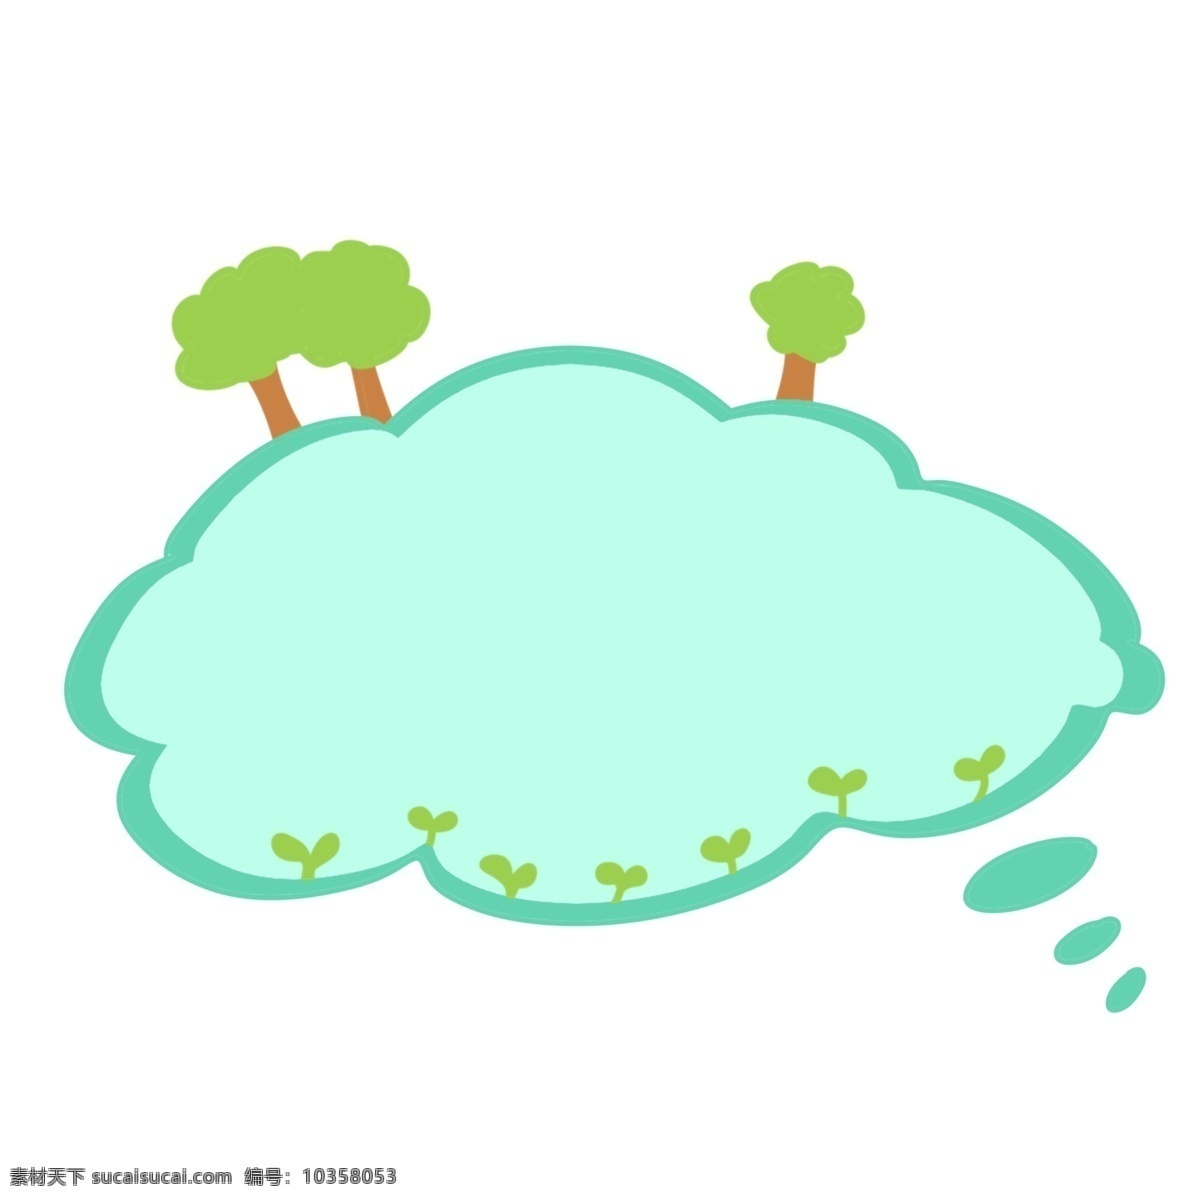 绿色 对话框 气泡 插画 绿色气泡 绿色对话框 会话框 爆炸 云边框 植物树木装饰 植物花草气泡